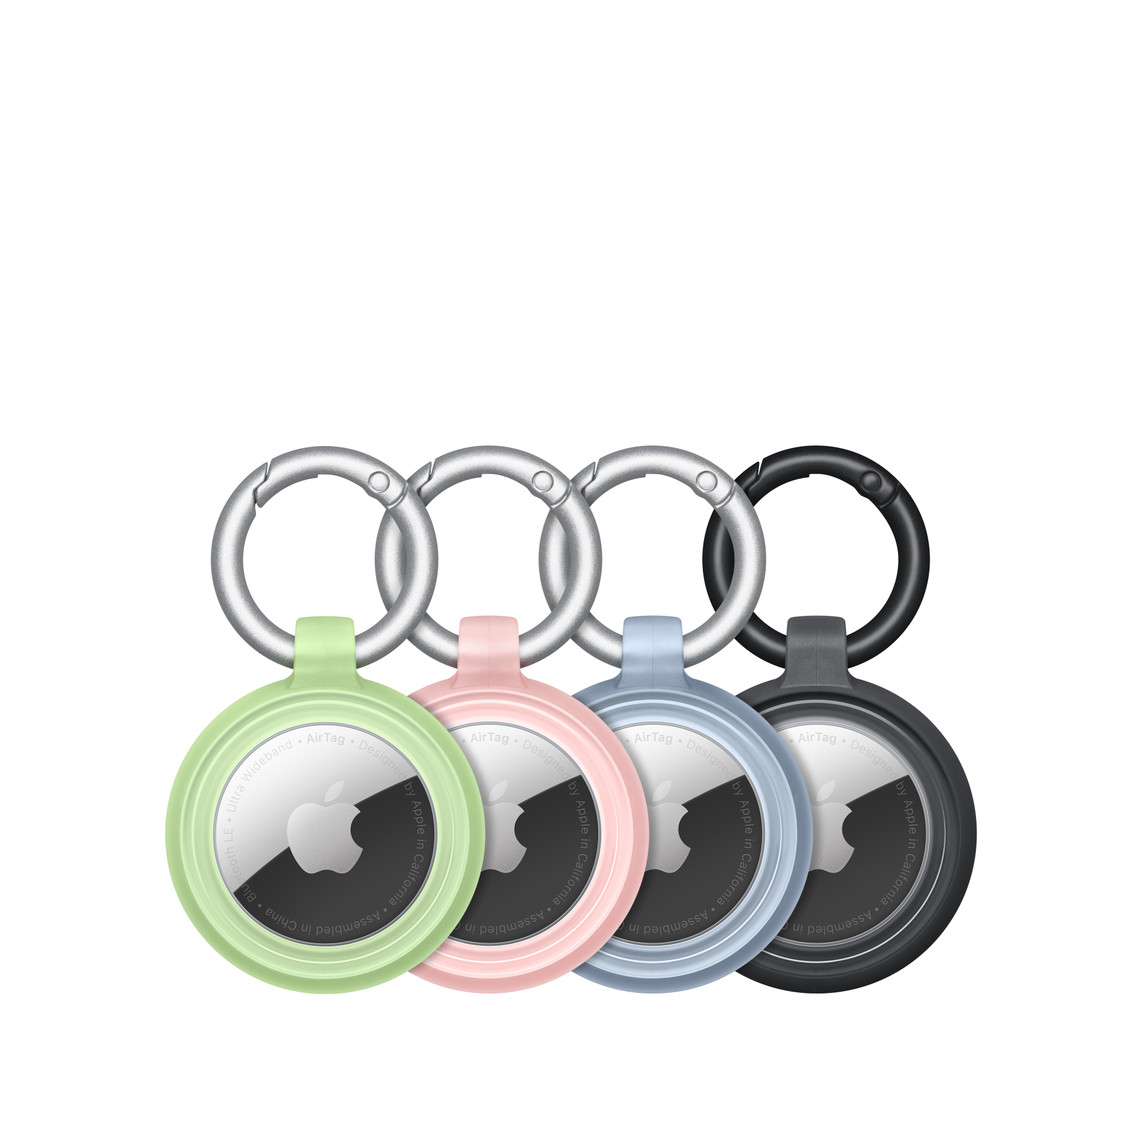 Cztery etui OtterBox Lumen Series w kolorach zielonym, różowym, niebieskim i czarnym z bezpiecznie umieszczonymi w nich AirTagami; w środku widoczne logo Apple.